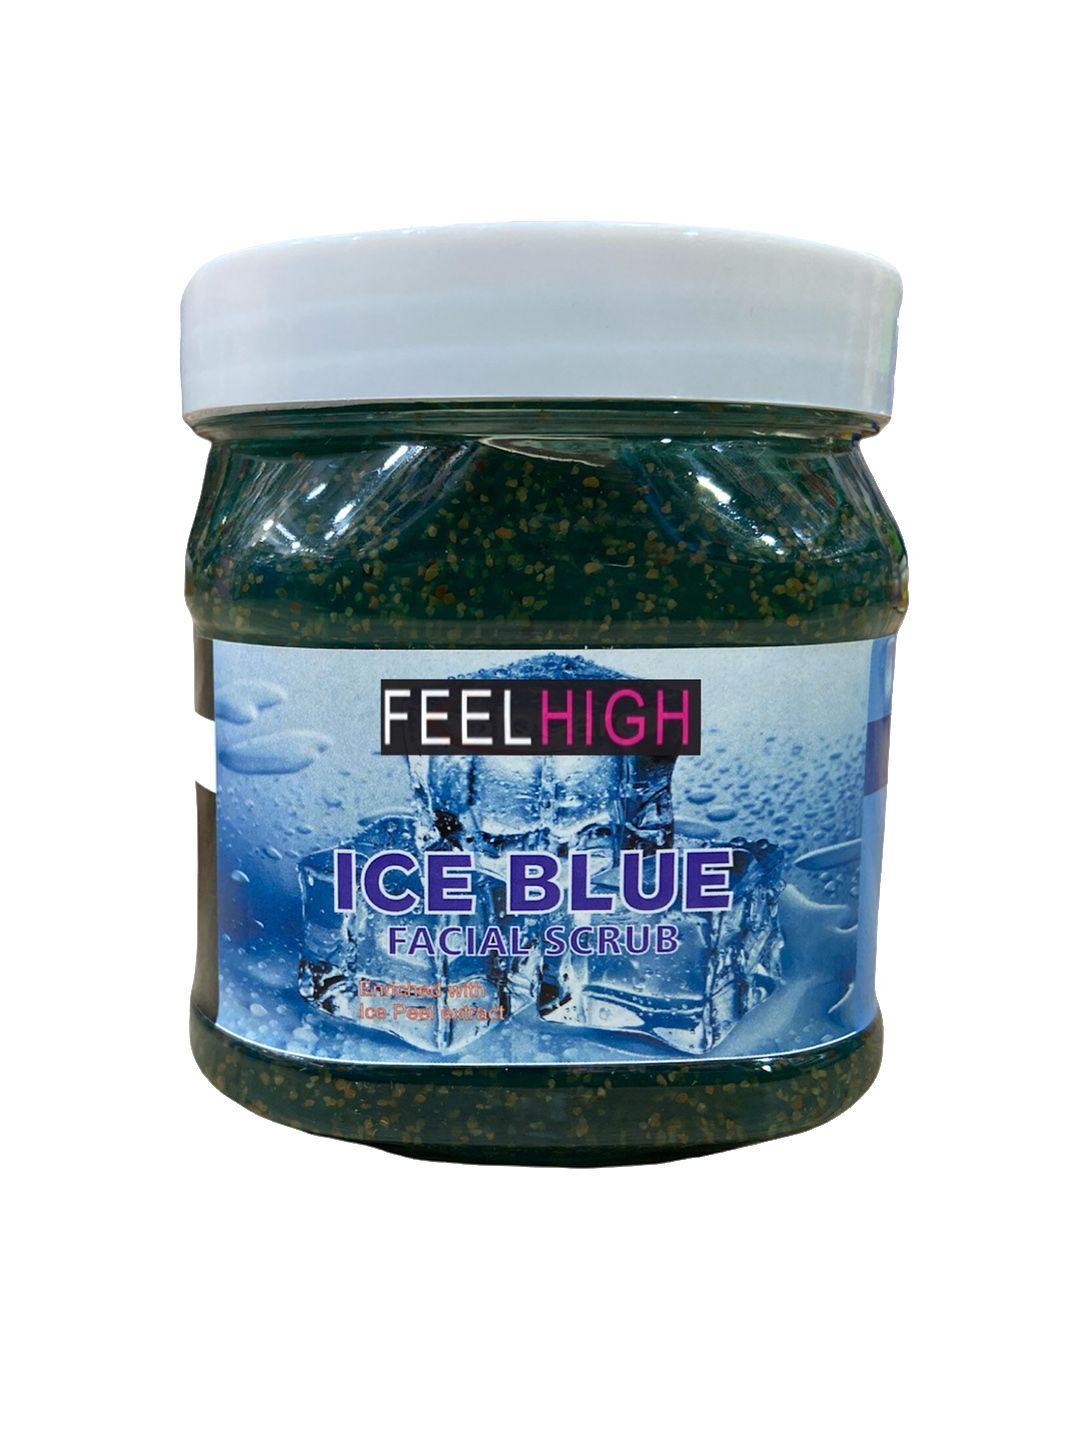 feelhigh ice blue facial scrub with ice peel extract - 500 ml